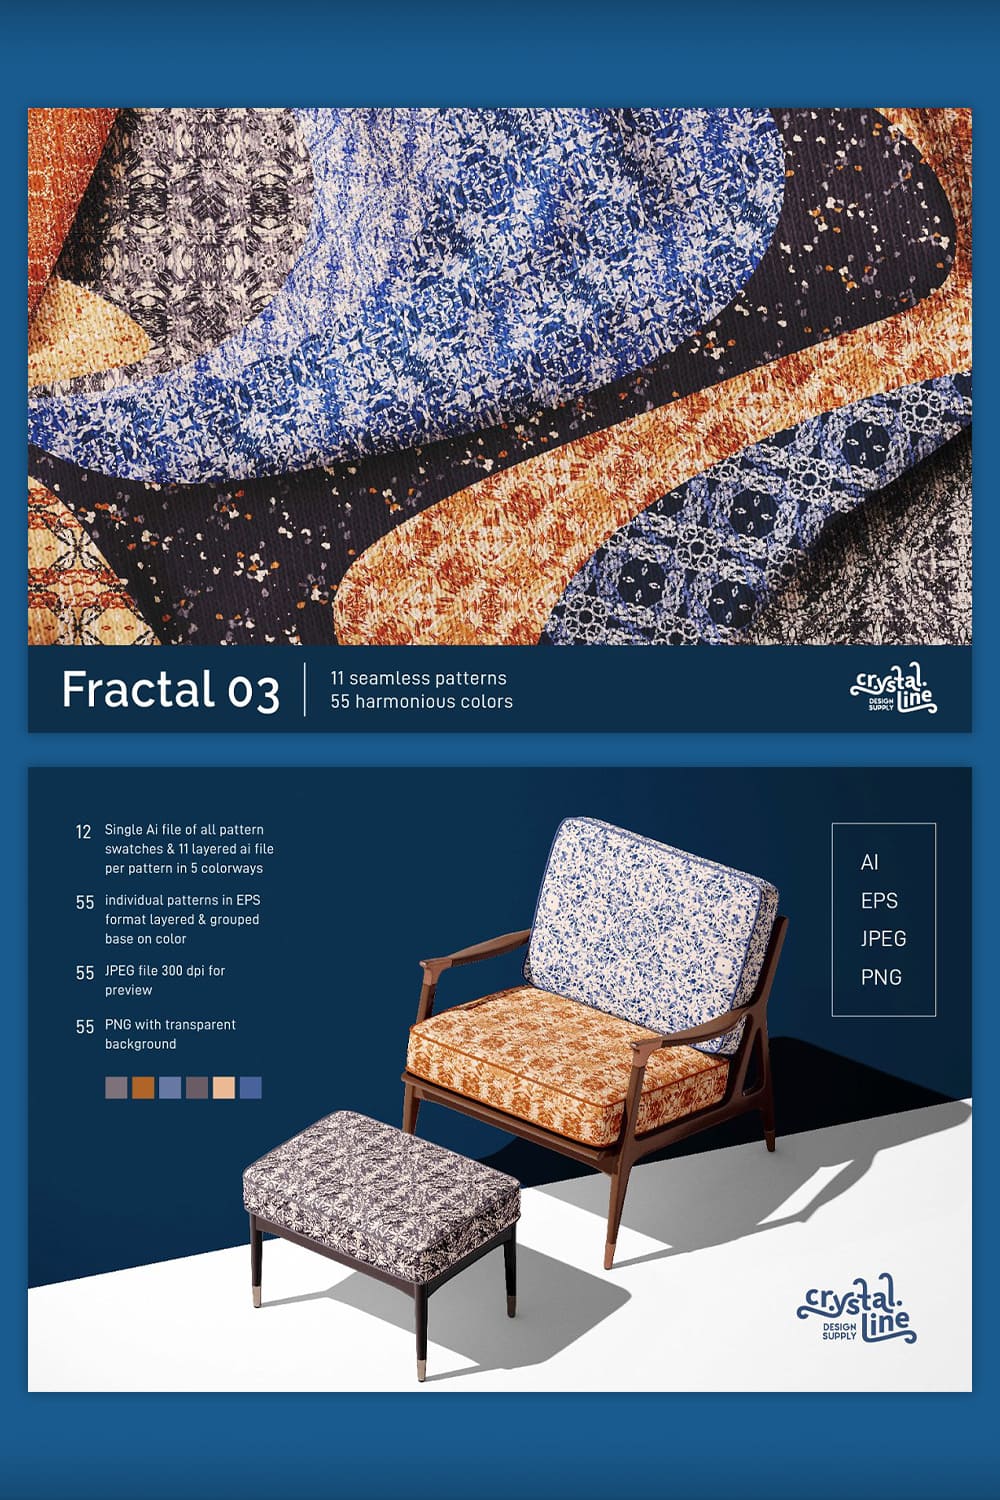 Fractal Patterns 03 pinterest image.